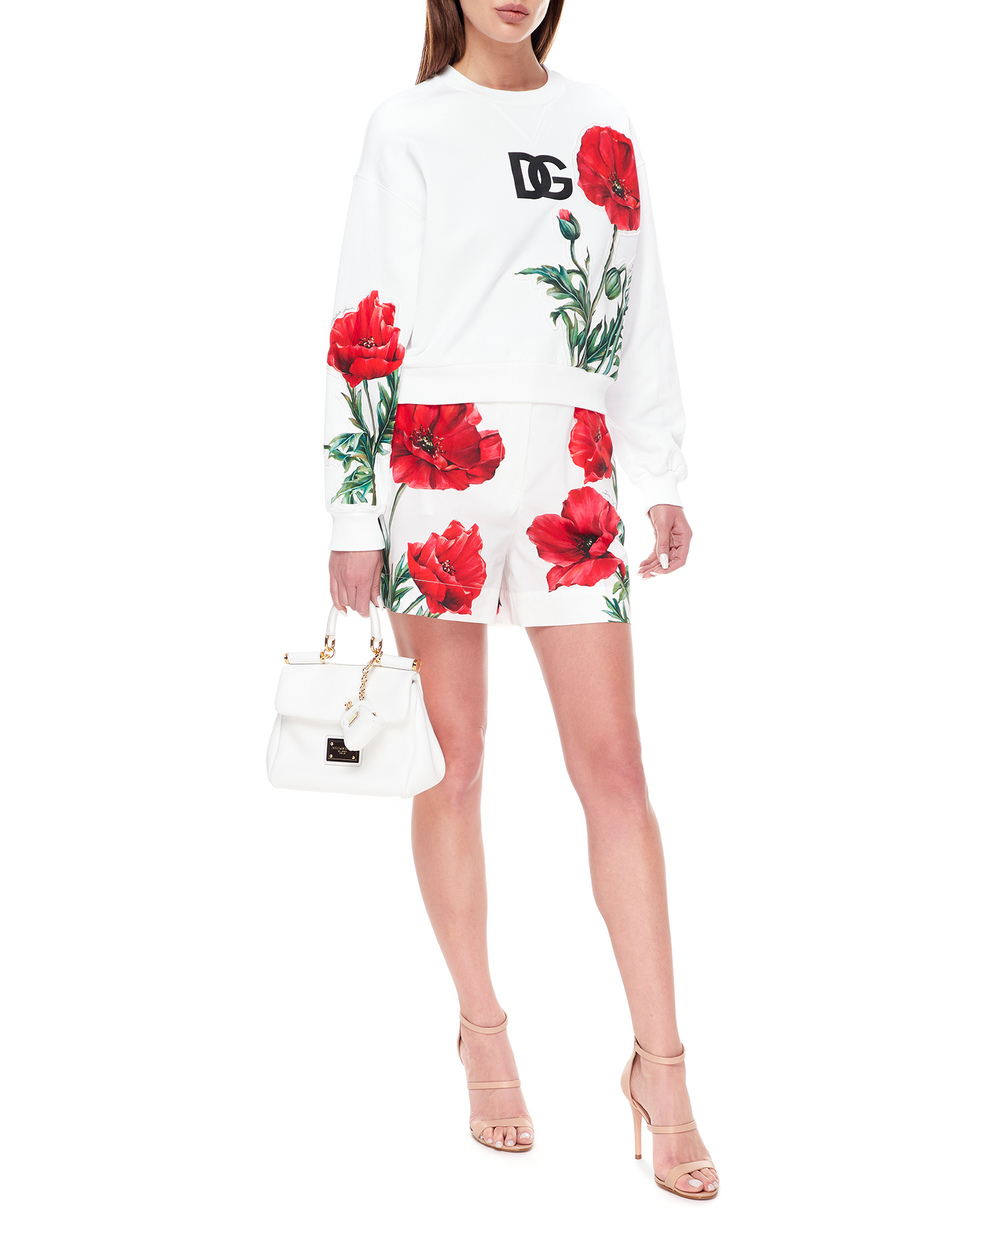 Кожаная сумка Sicily Small Dolce&Gabbana BB7400-AG642, белый цвет • Купить в интернет-магазине Kameron